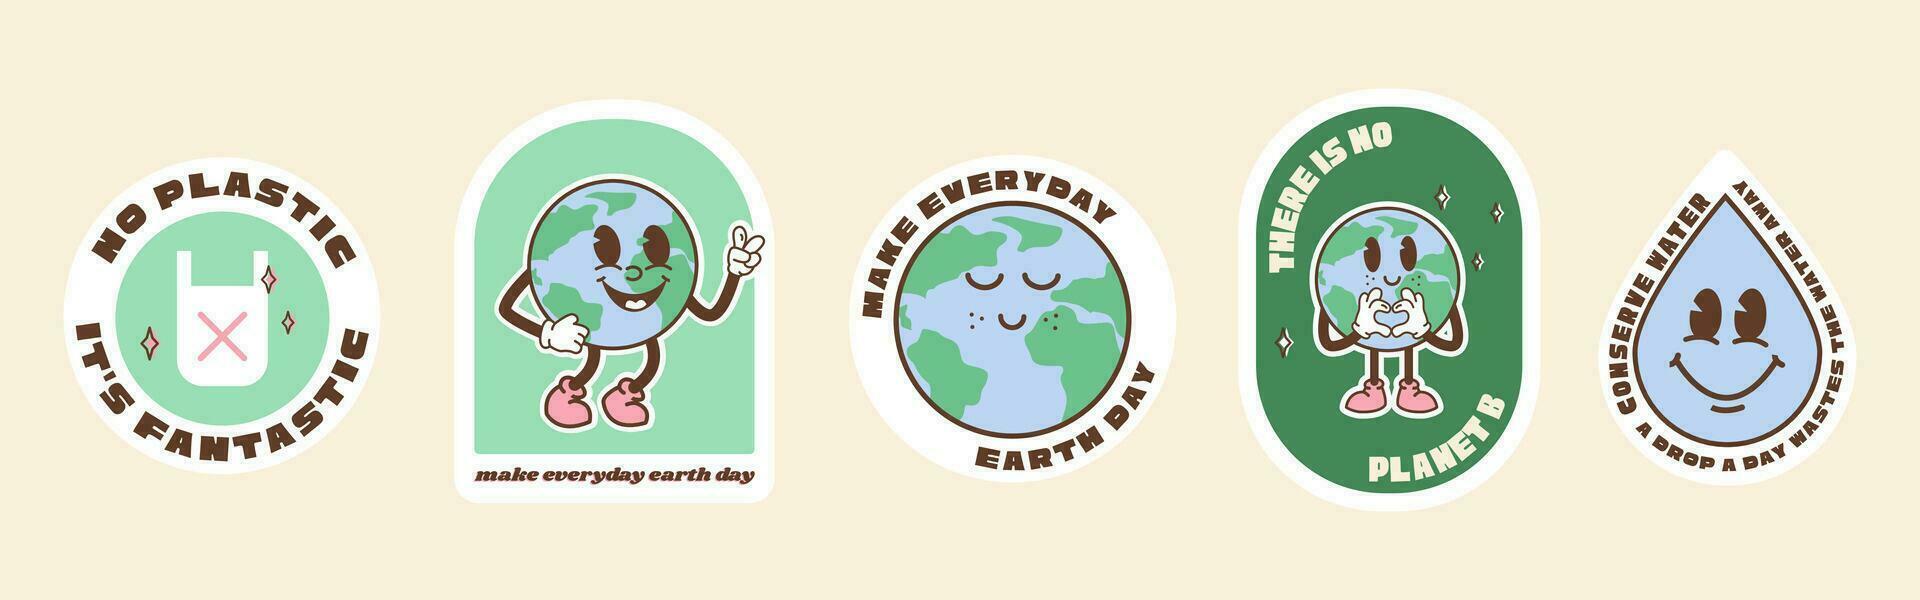 Salva il pianeta adesivi nel di moda retrò cartone animato stile. etichetta imballare per terra o mondo ambiente giorno. divertente vettore illustrazione di pianeta terra, globo con sorridente viso. eco verde etichette o distintivi.